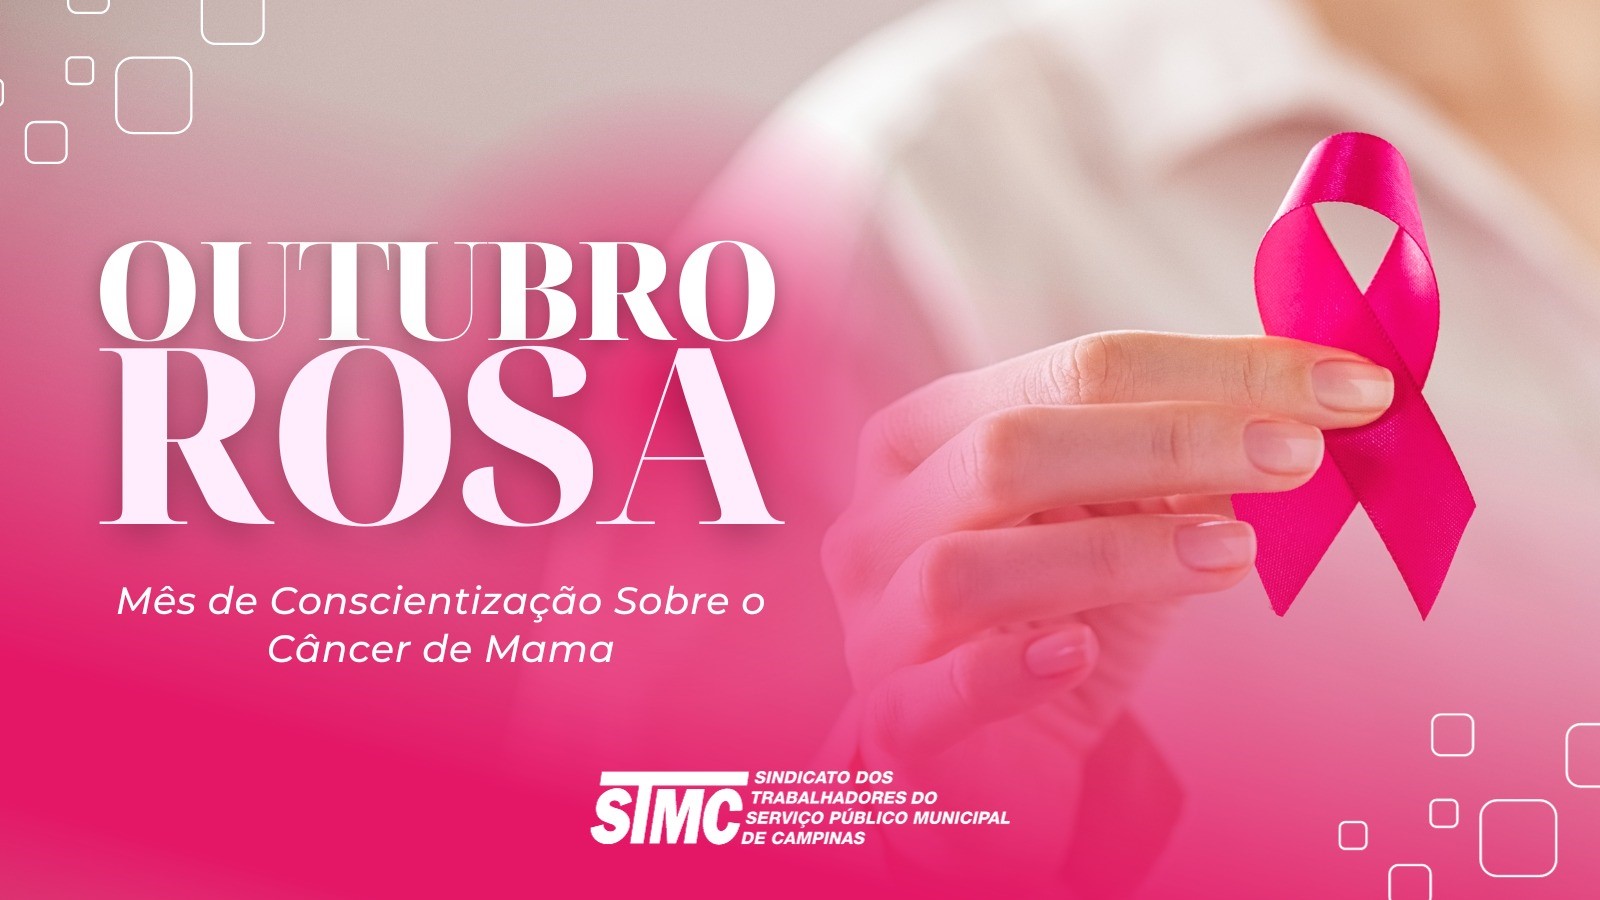 Outubro Rosa trata da prevenção contra o câncer de mama e dos cuidados com a saúde da mulher